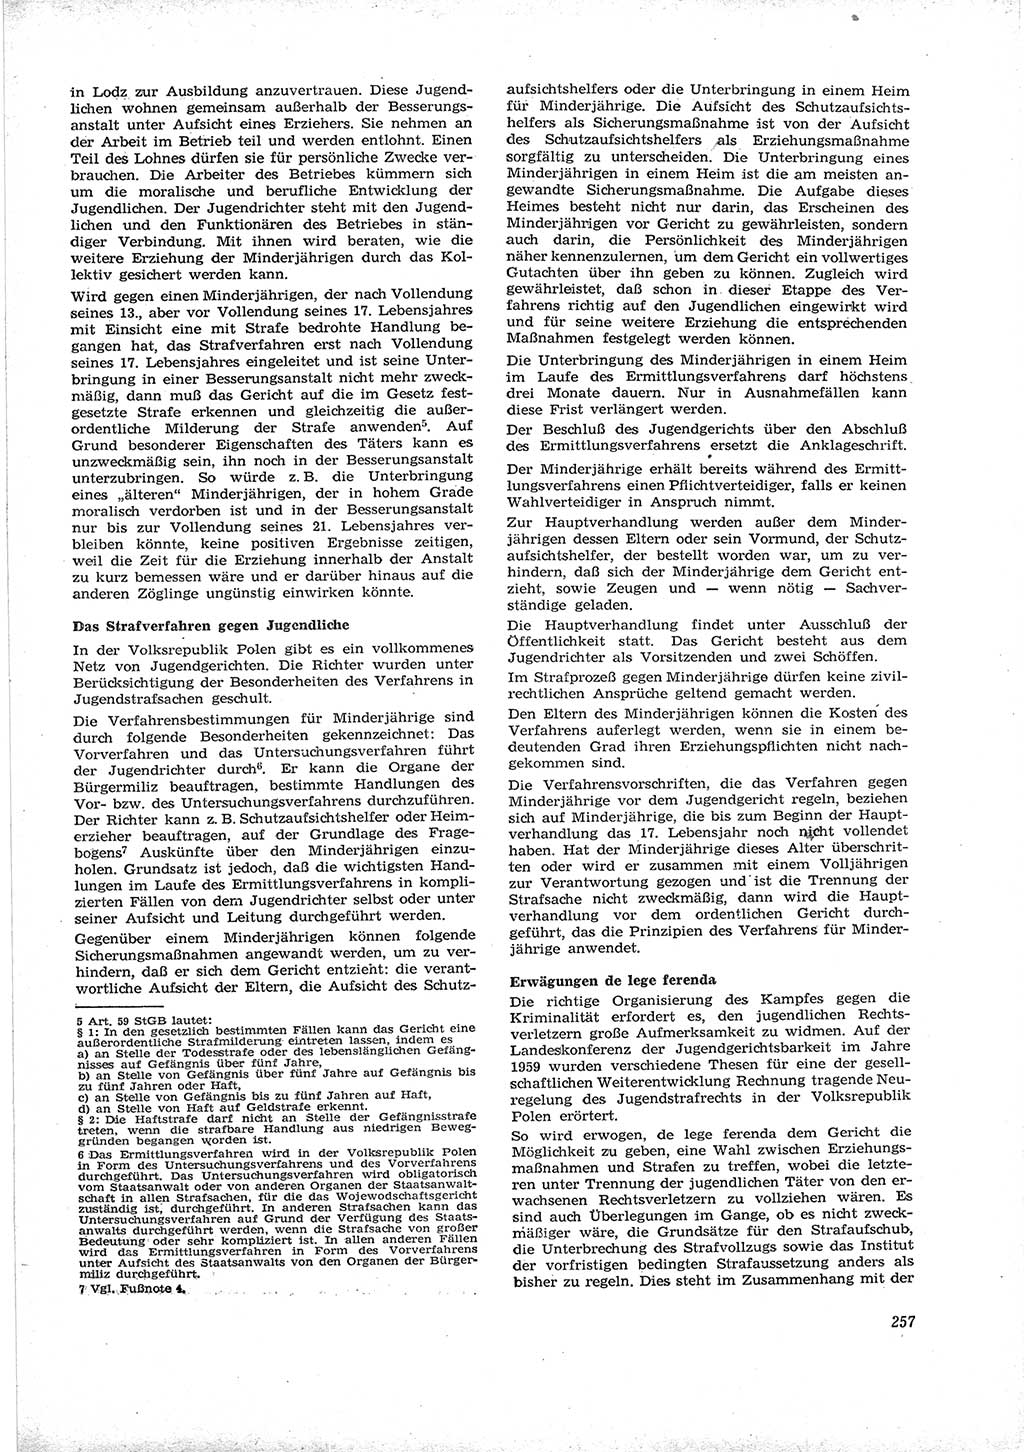 Neue Justiz (NJ), Zeitschrift für Recht und Rechtswissenschaft [Deutsche Demokratische Republik (DDR)], 16. Jahrgang 1962, Seite 257 (NJ DDR 1962, S. 257)